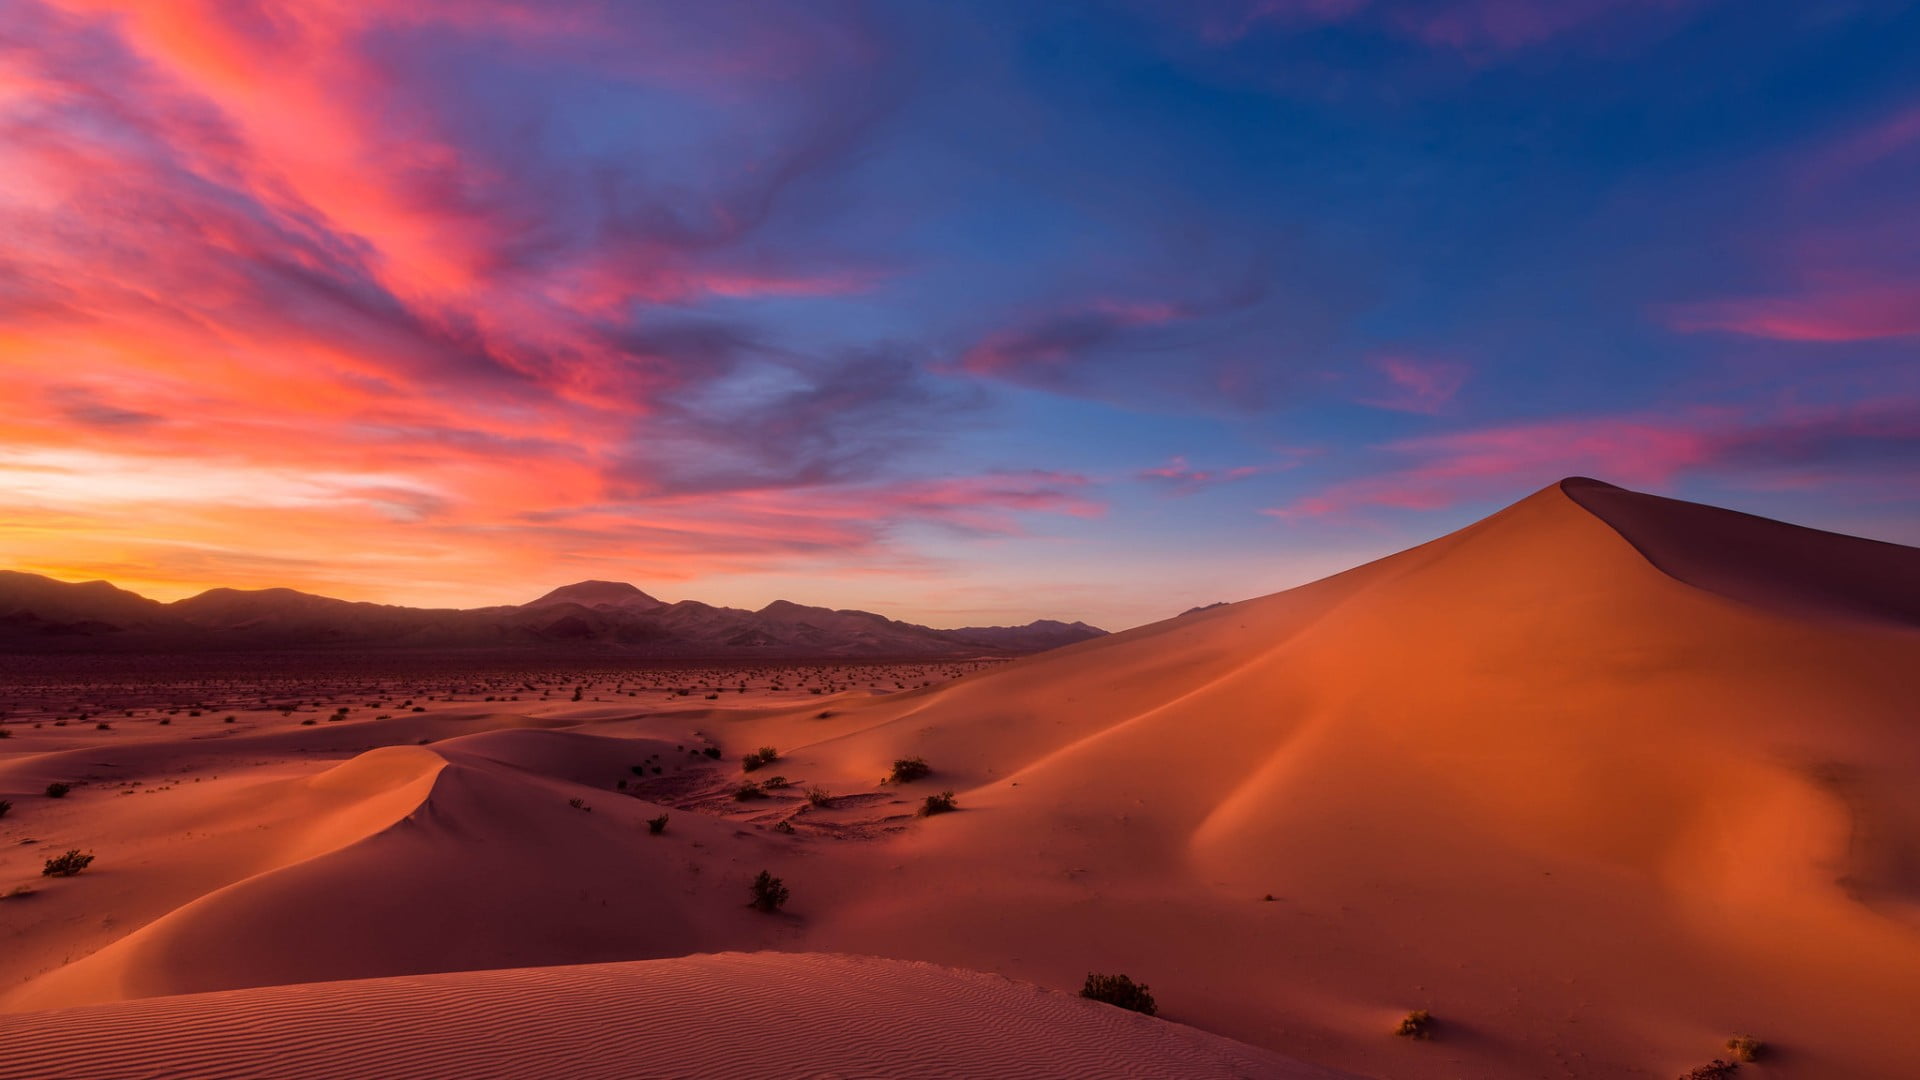 desert illustration, landscape, sunrise, dunes, hills, sky, mountain